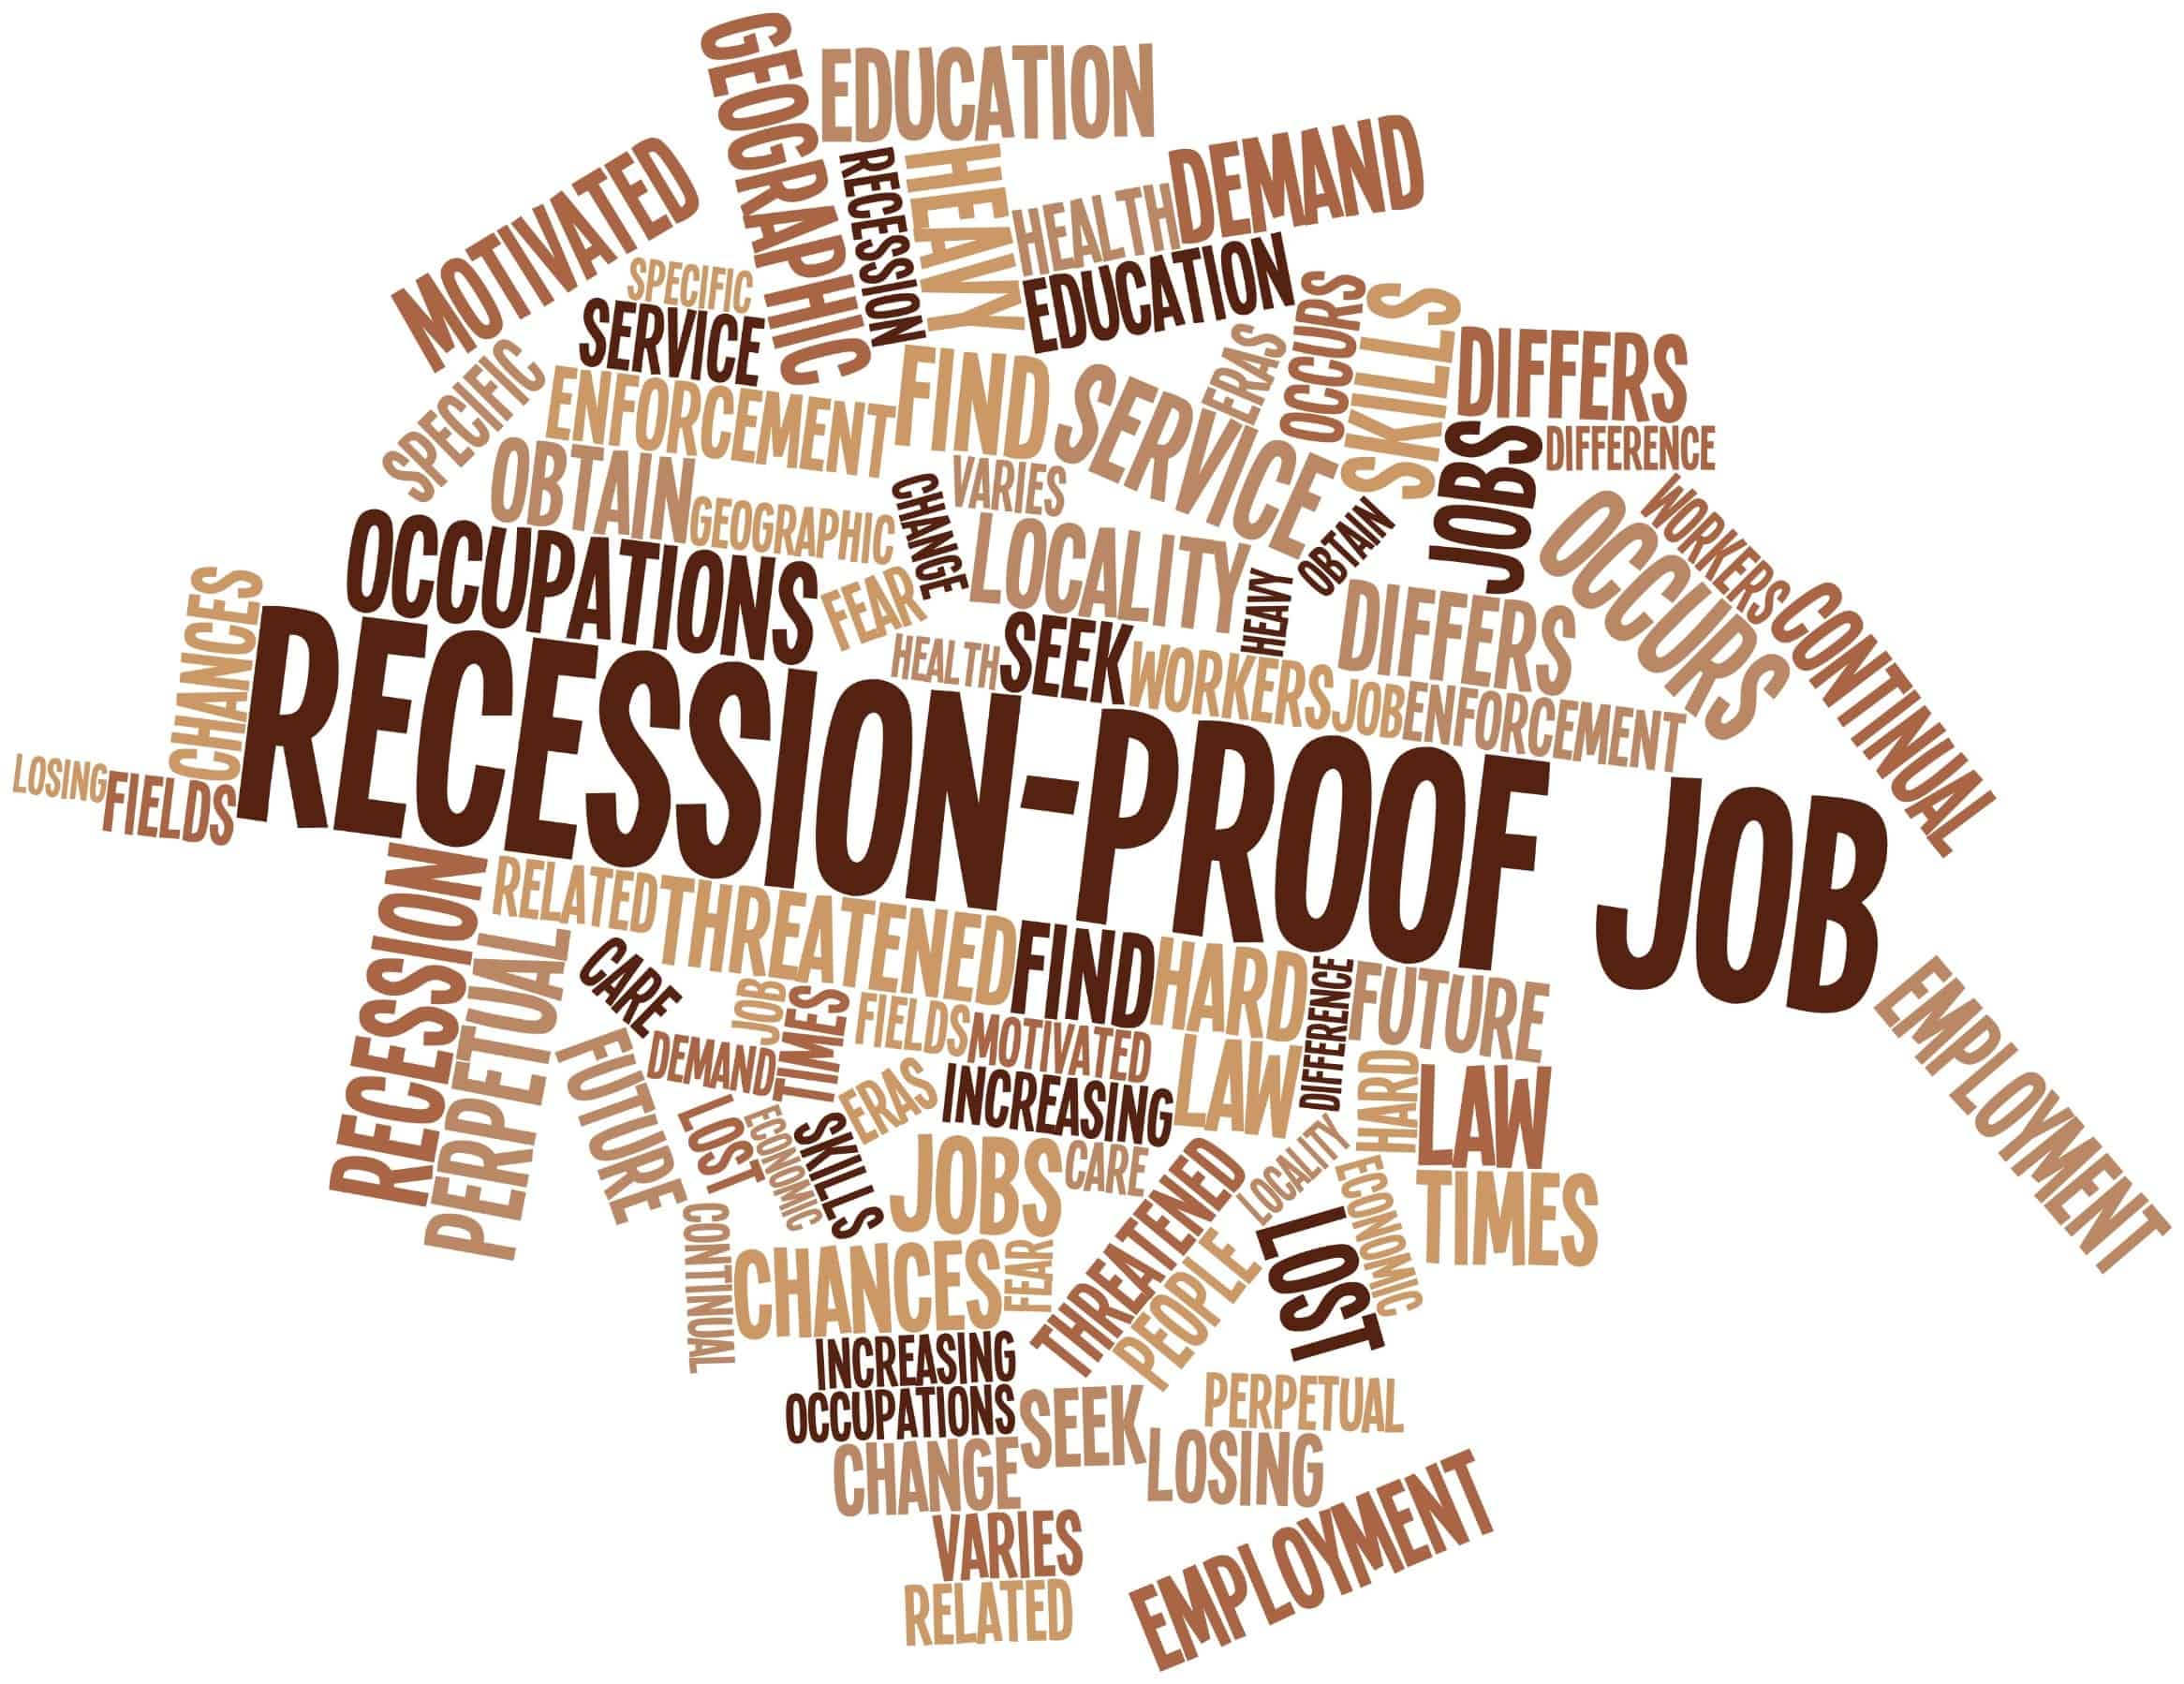 Recession proof jobs